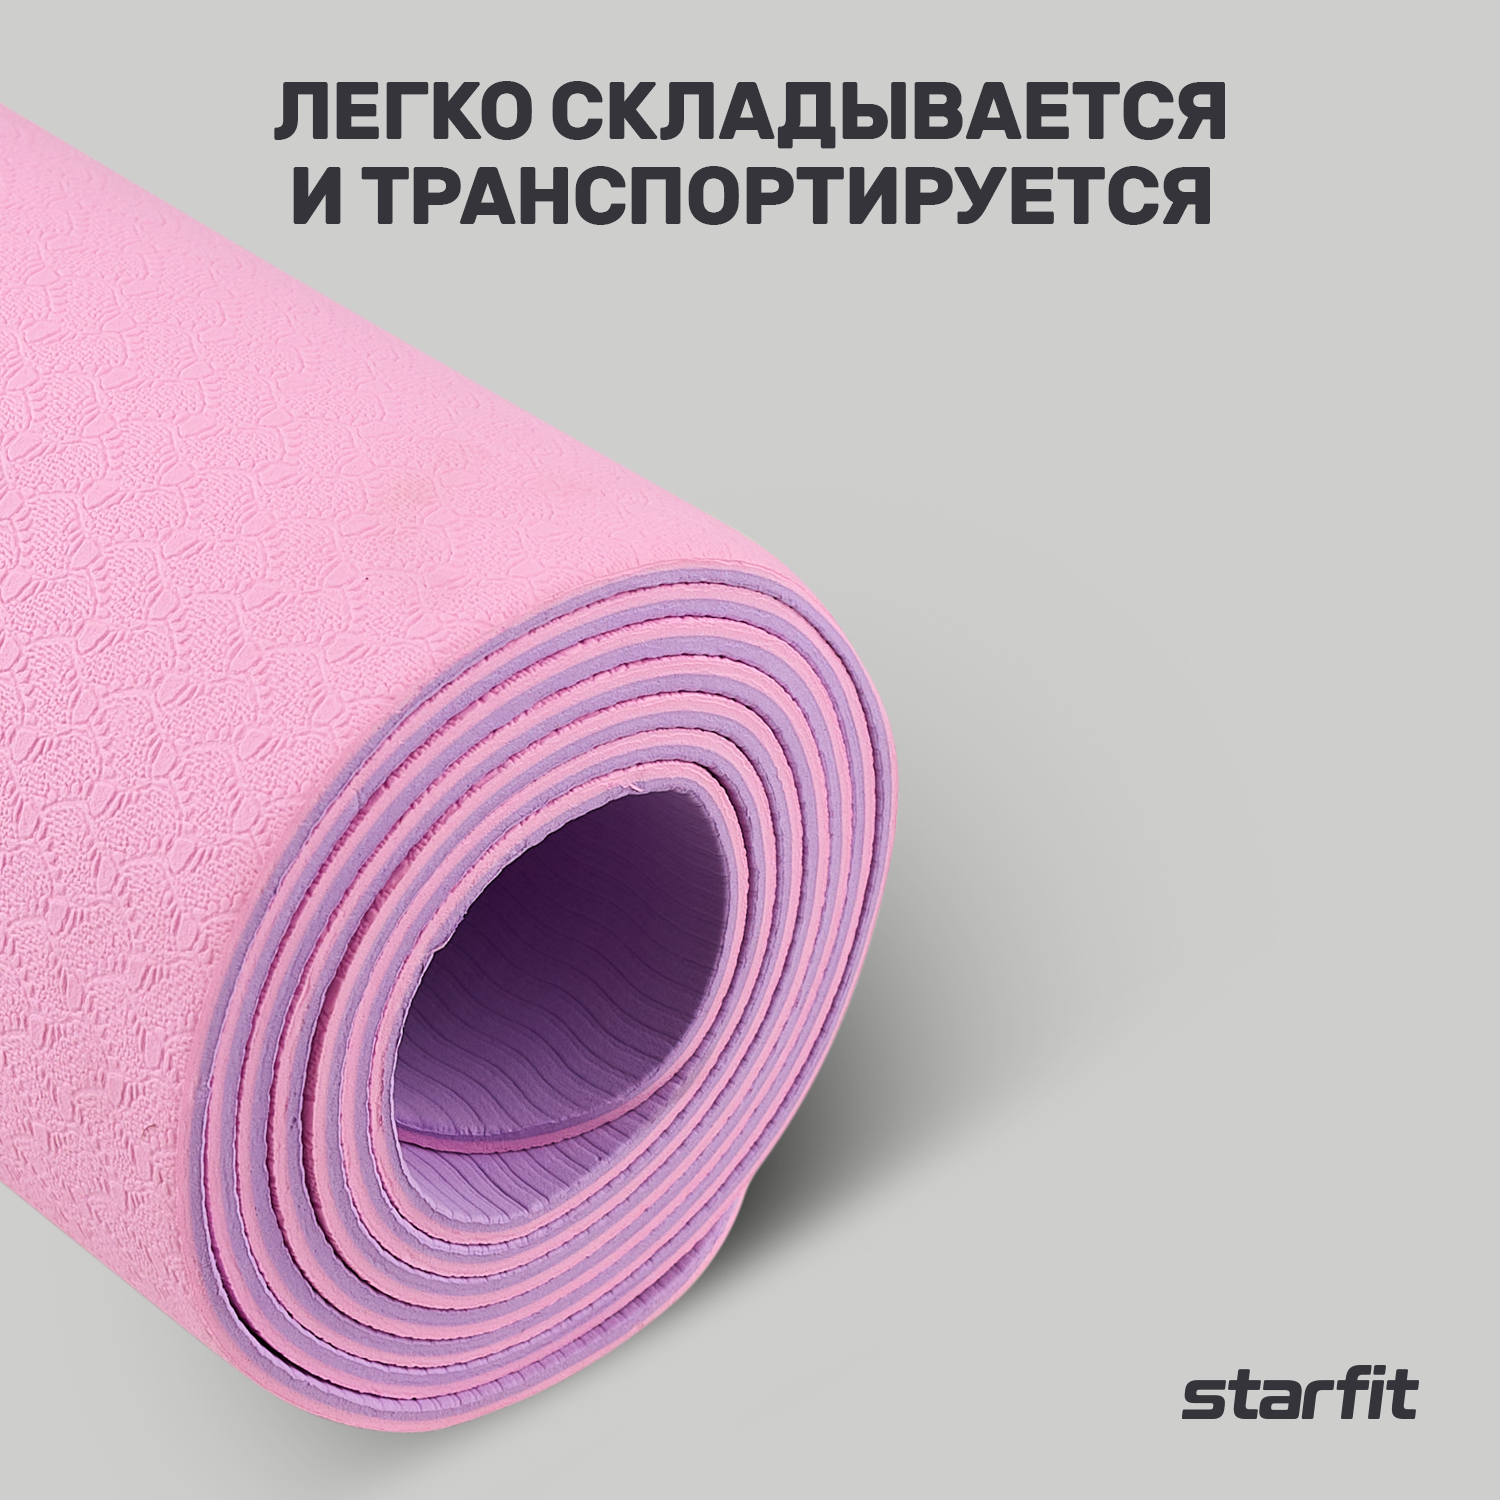 Коврик для йоги и фитнеса STARFIT FM-201 TPE, 0,4 см, 183x61 см, розовый пастель/фиолет пастель